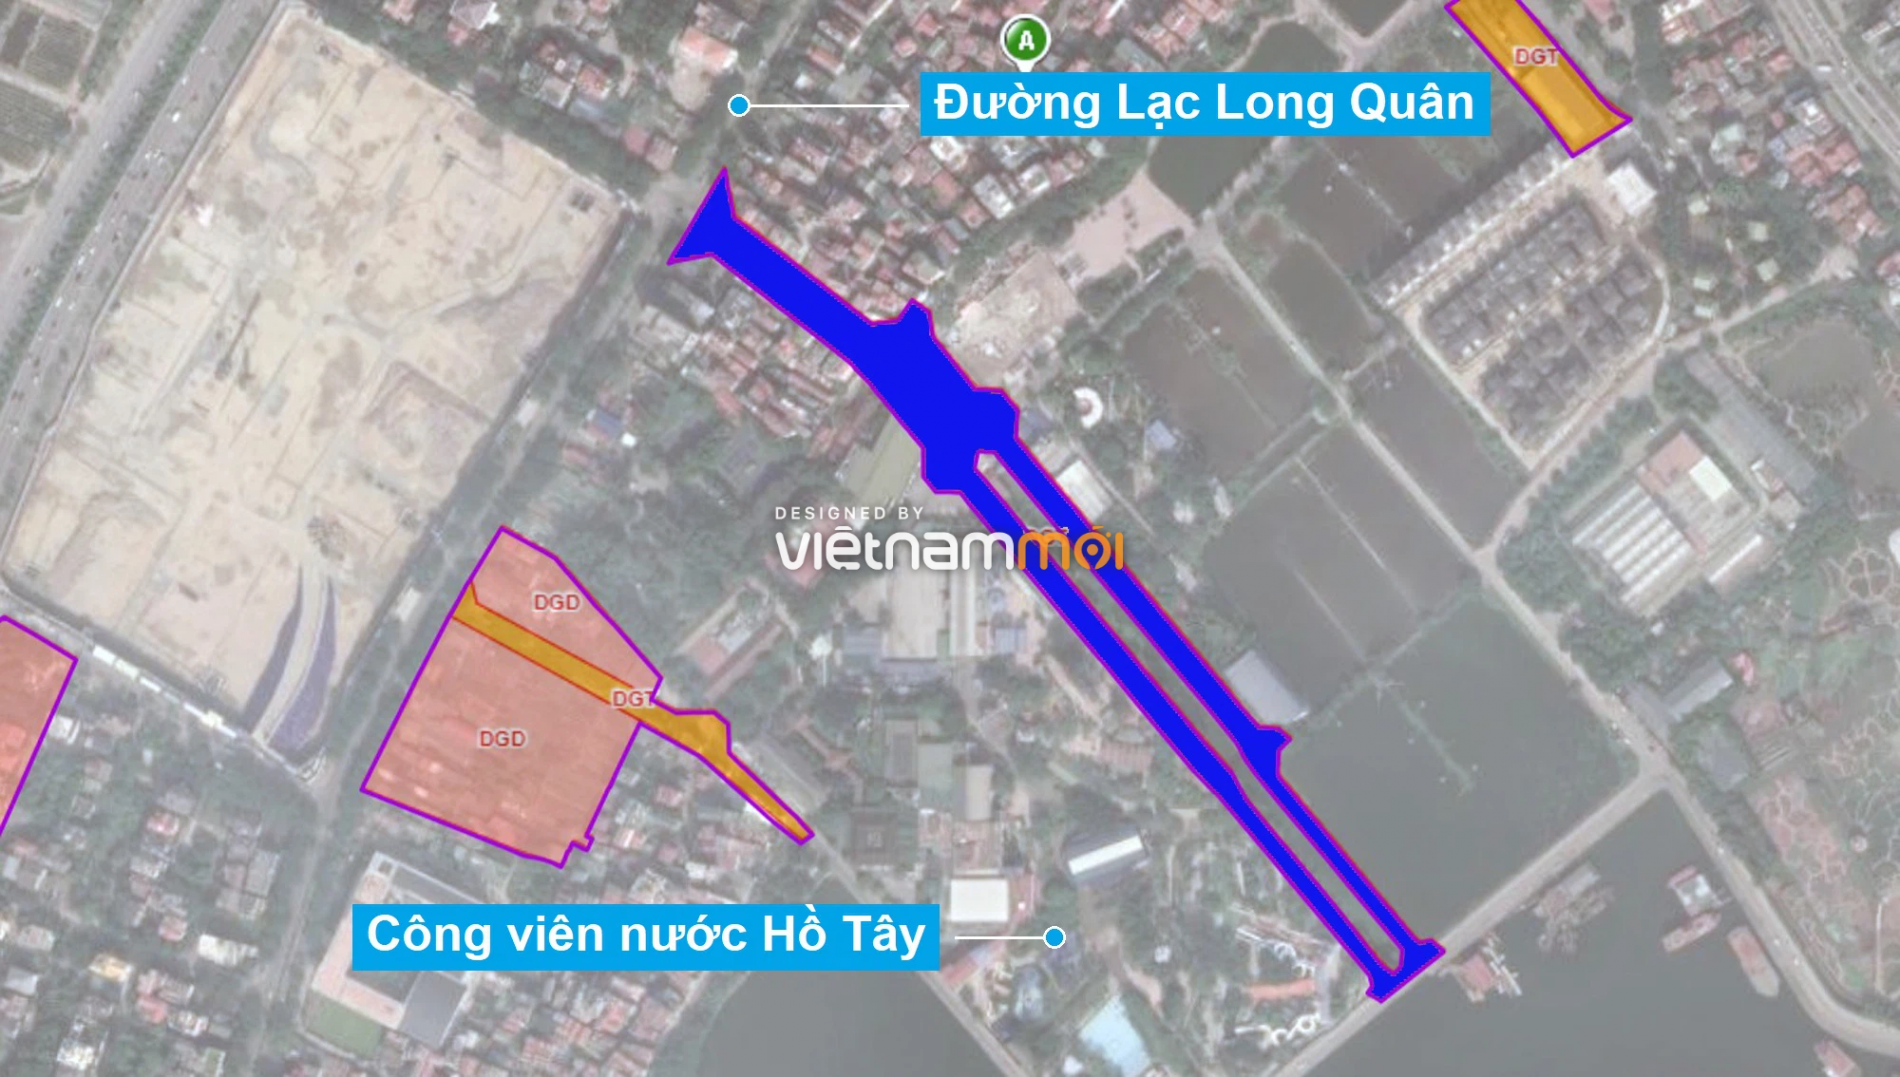 Những khu đất sắp thu hồi để mở đường ở quận Tây Hồ, Hà Nội (phần 2) - Ảnh 8.